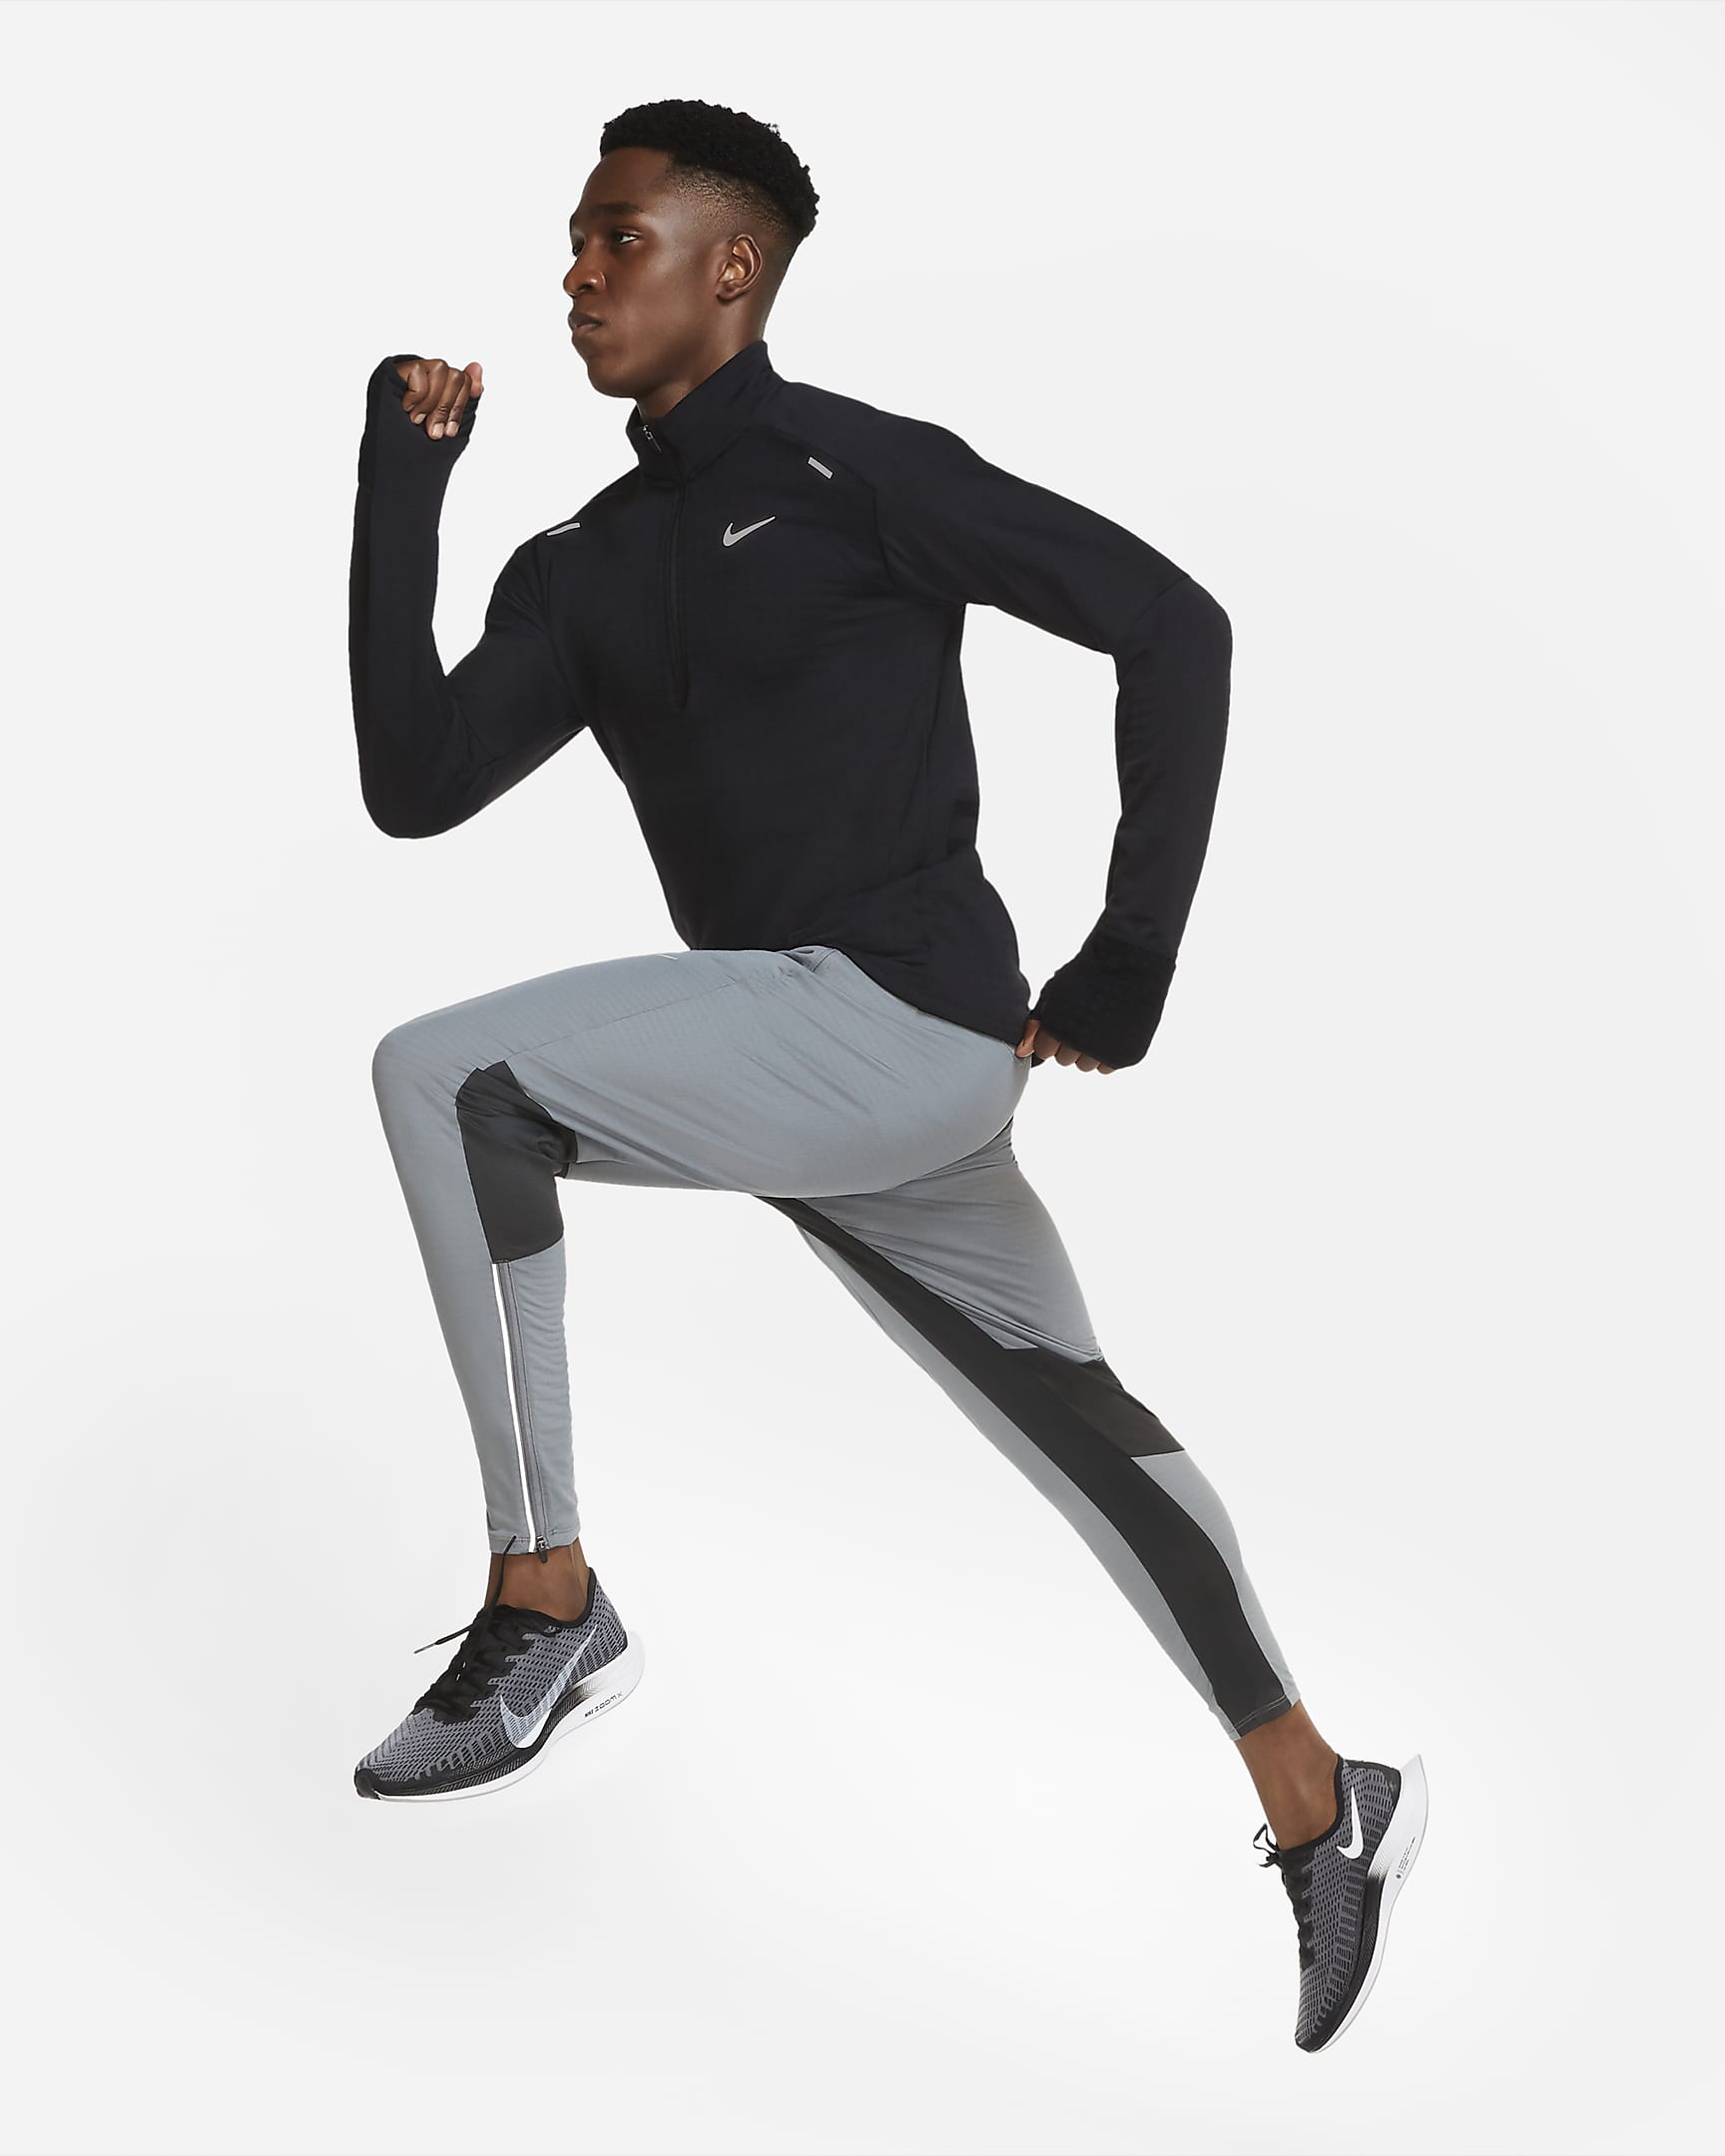 Nike Sphere Men's 1/2-Zip Running Top. Nike CA